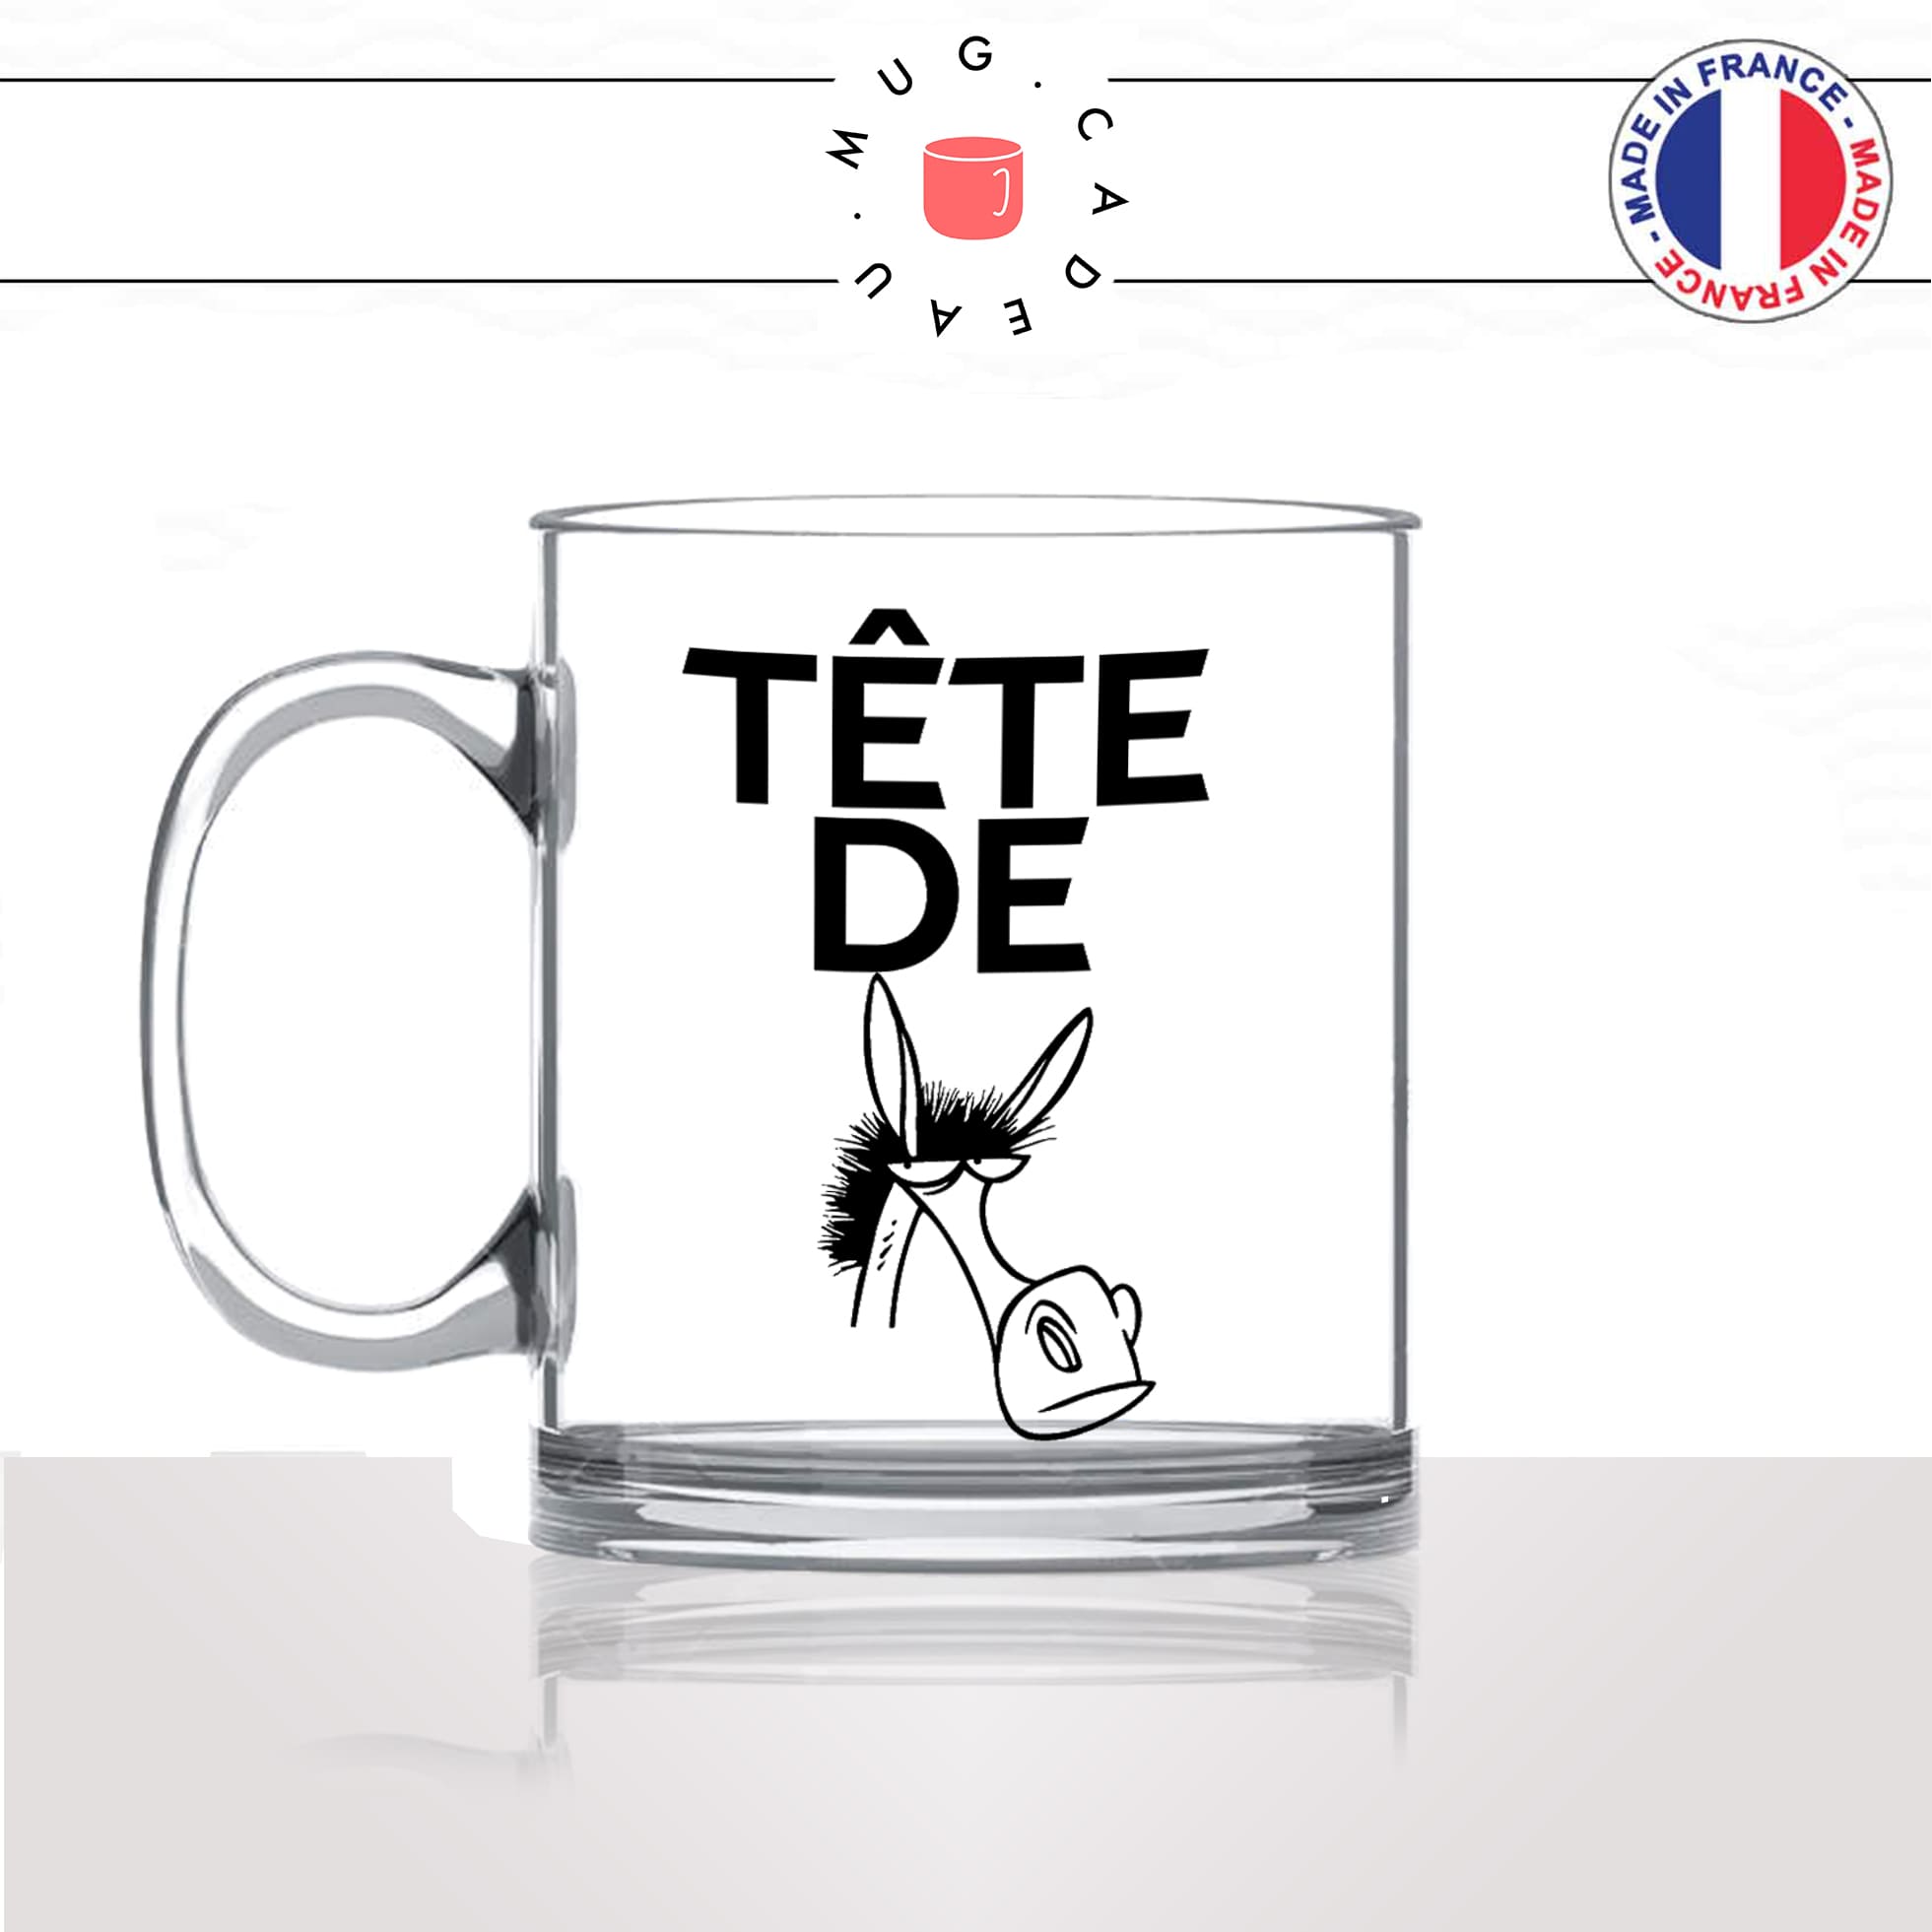 mug-tasse-en-verre-transparent-glass-tete-de-mule-drole-expression-francaise-borné-homme-femme-humour-fun-idée-cadeau-originale-cool